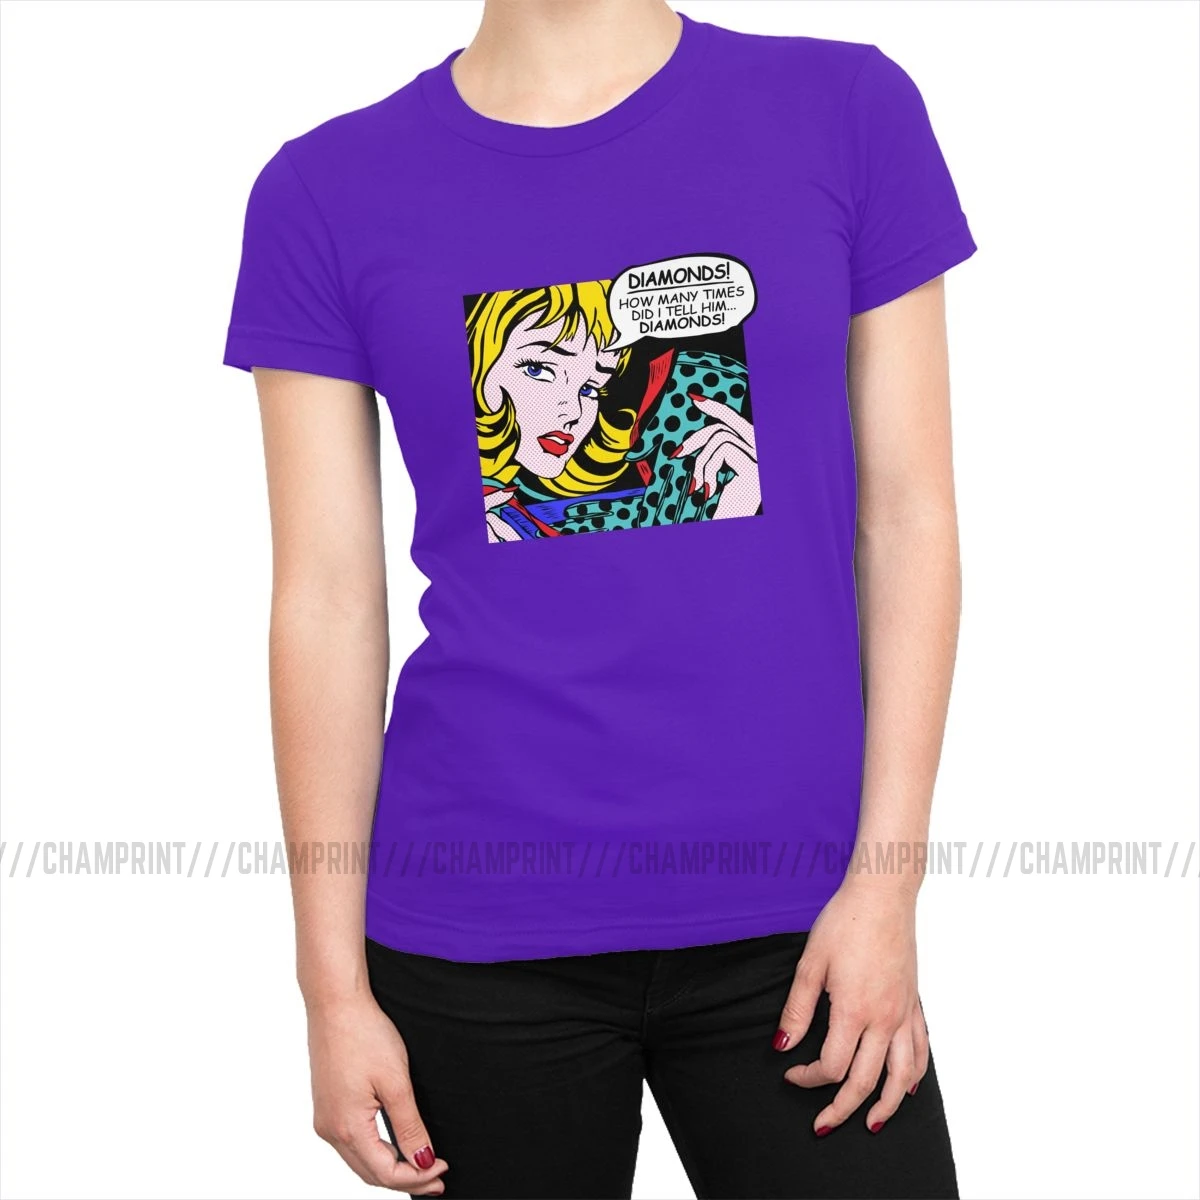 Roy Lichtenstein комическое искусство девушка с перчатками футболки женские корейский стиль поп-арт футболка футболки tumblr топы Женская одежда - Цвет: Фиолетовый